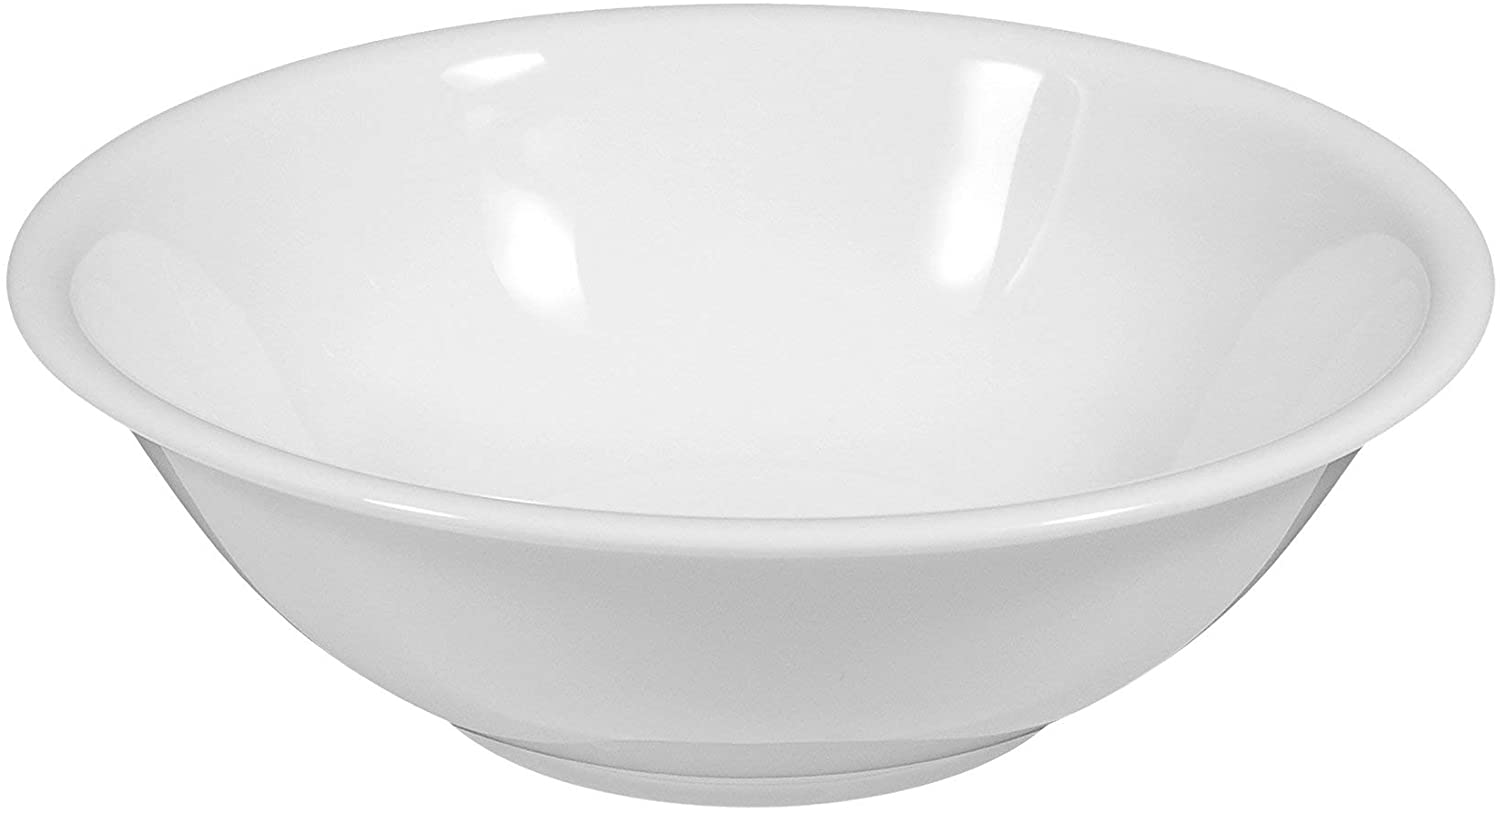 Seltmann Weiden Compact Bowl, Round, Porcelain, White, Dishwasher Safe, Ø 20 cm, 1452127